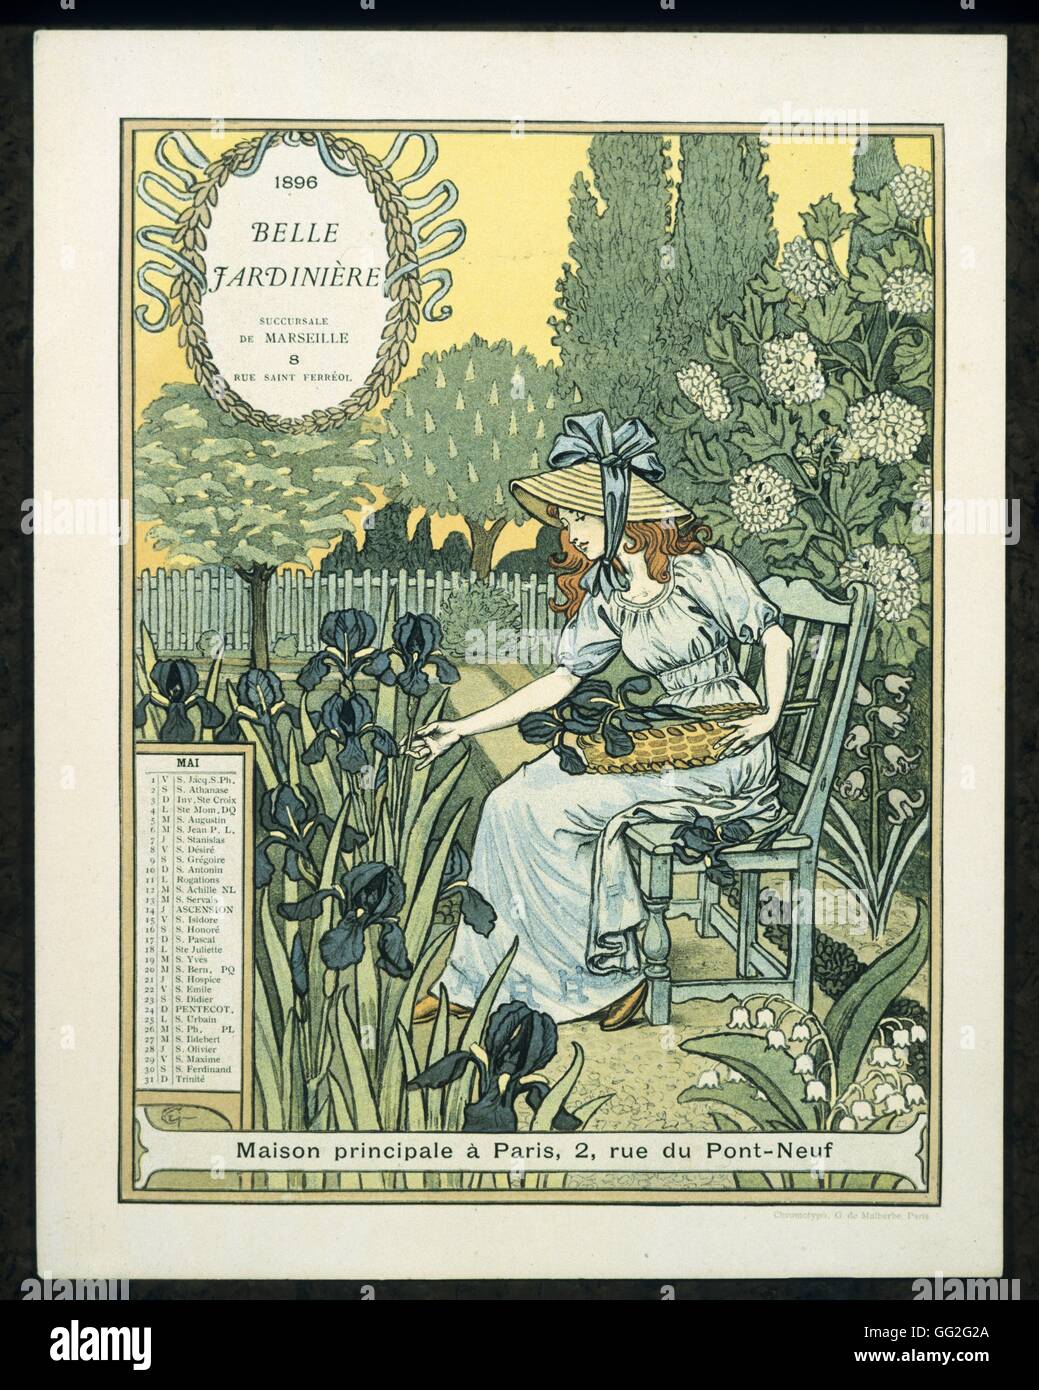 Calendario escolar francés Eugène Grasset página desde la Belle Jardiniere, año 1896: el mes de mayo el dibujo Foto de stock